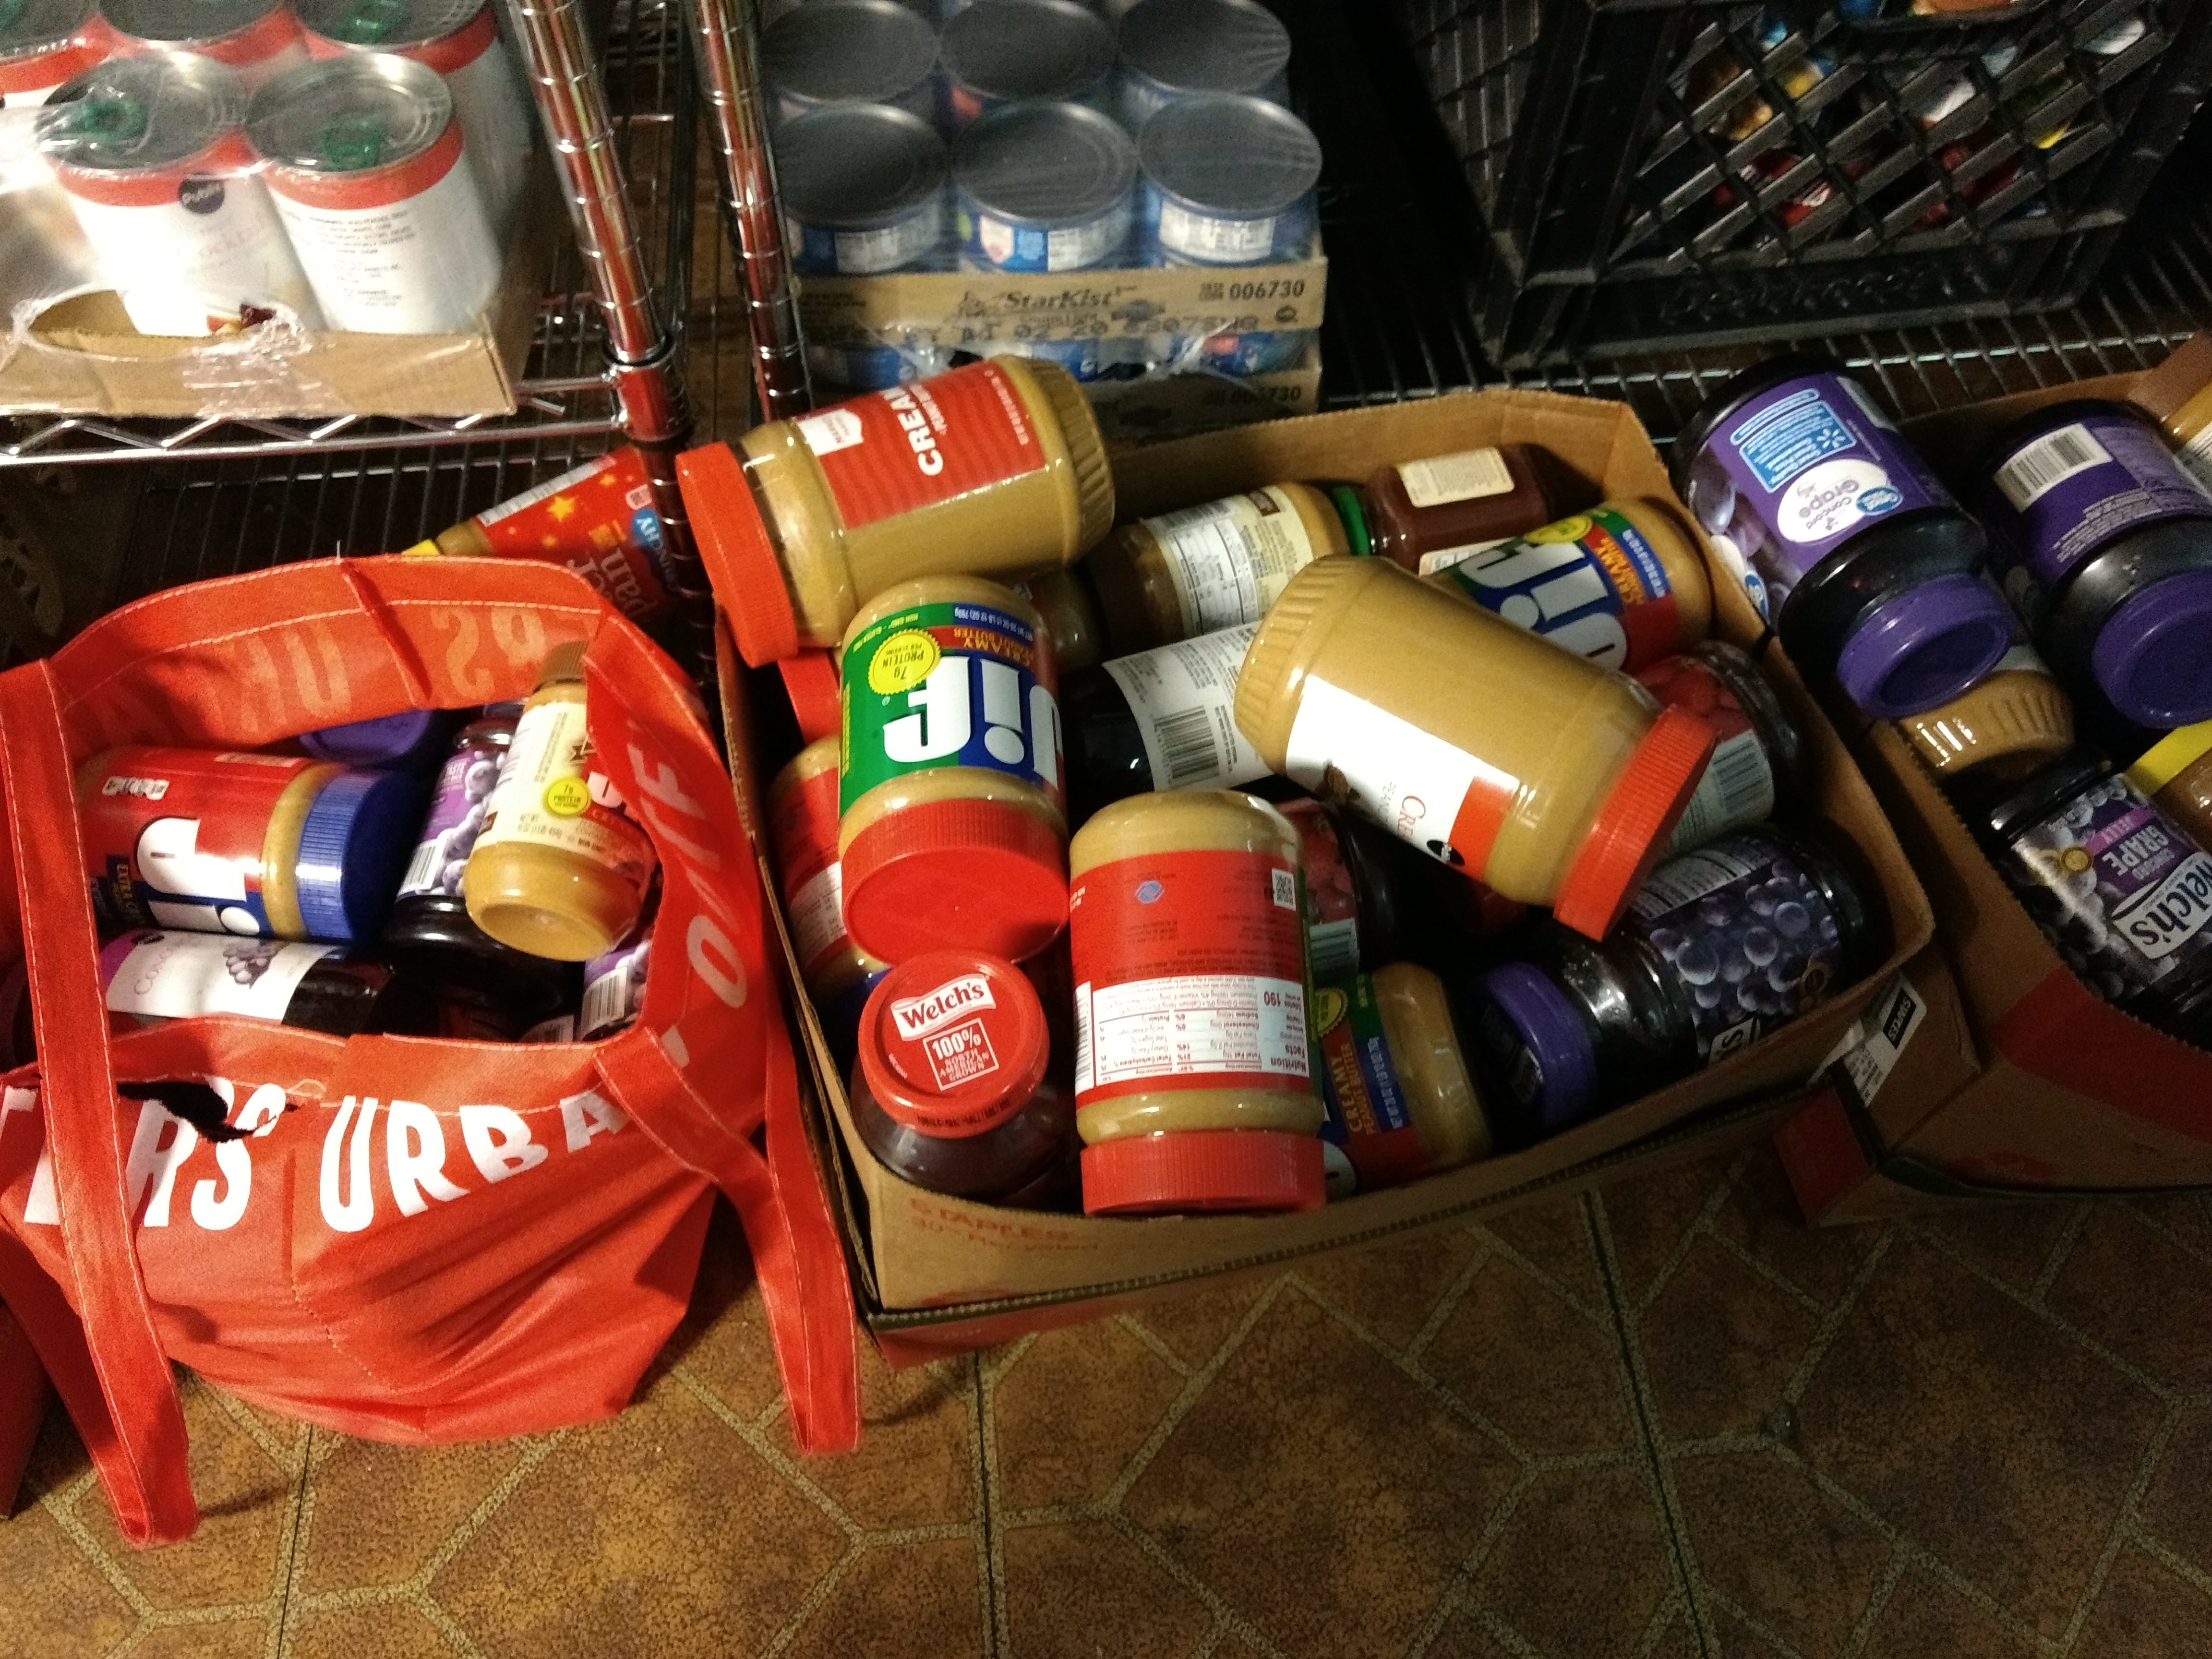 Donated goods for feeding the homeless.